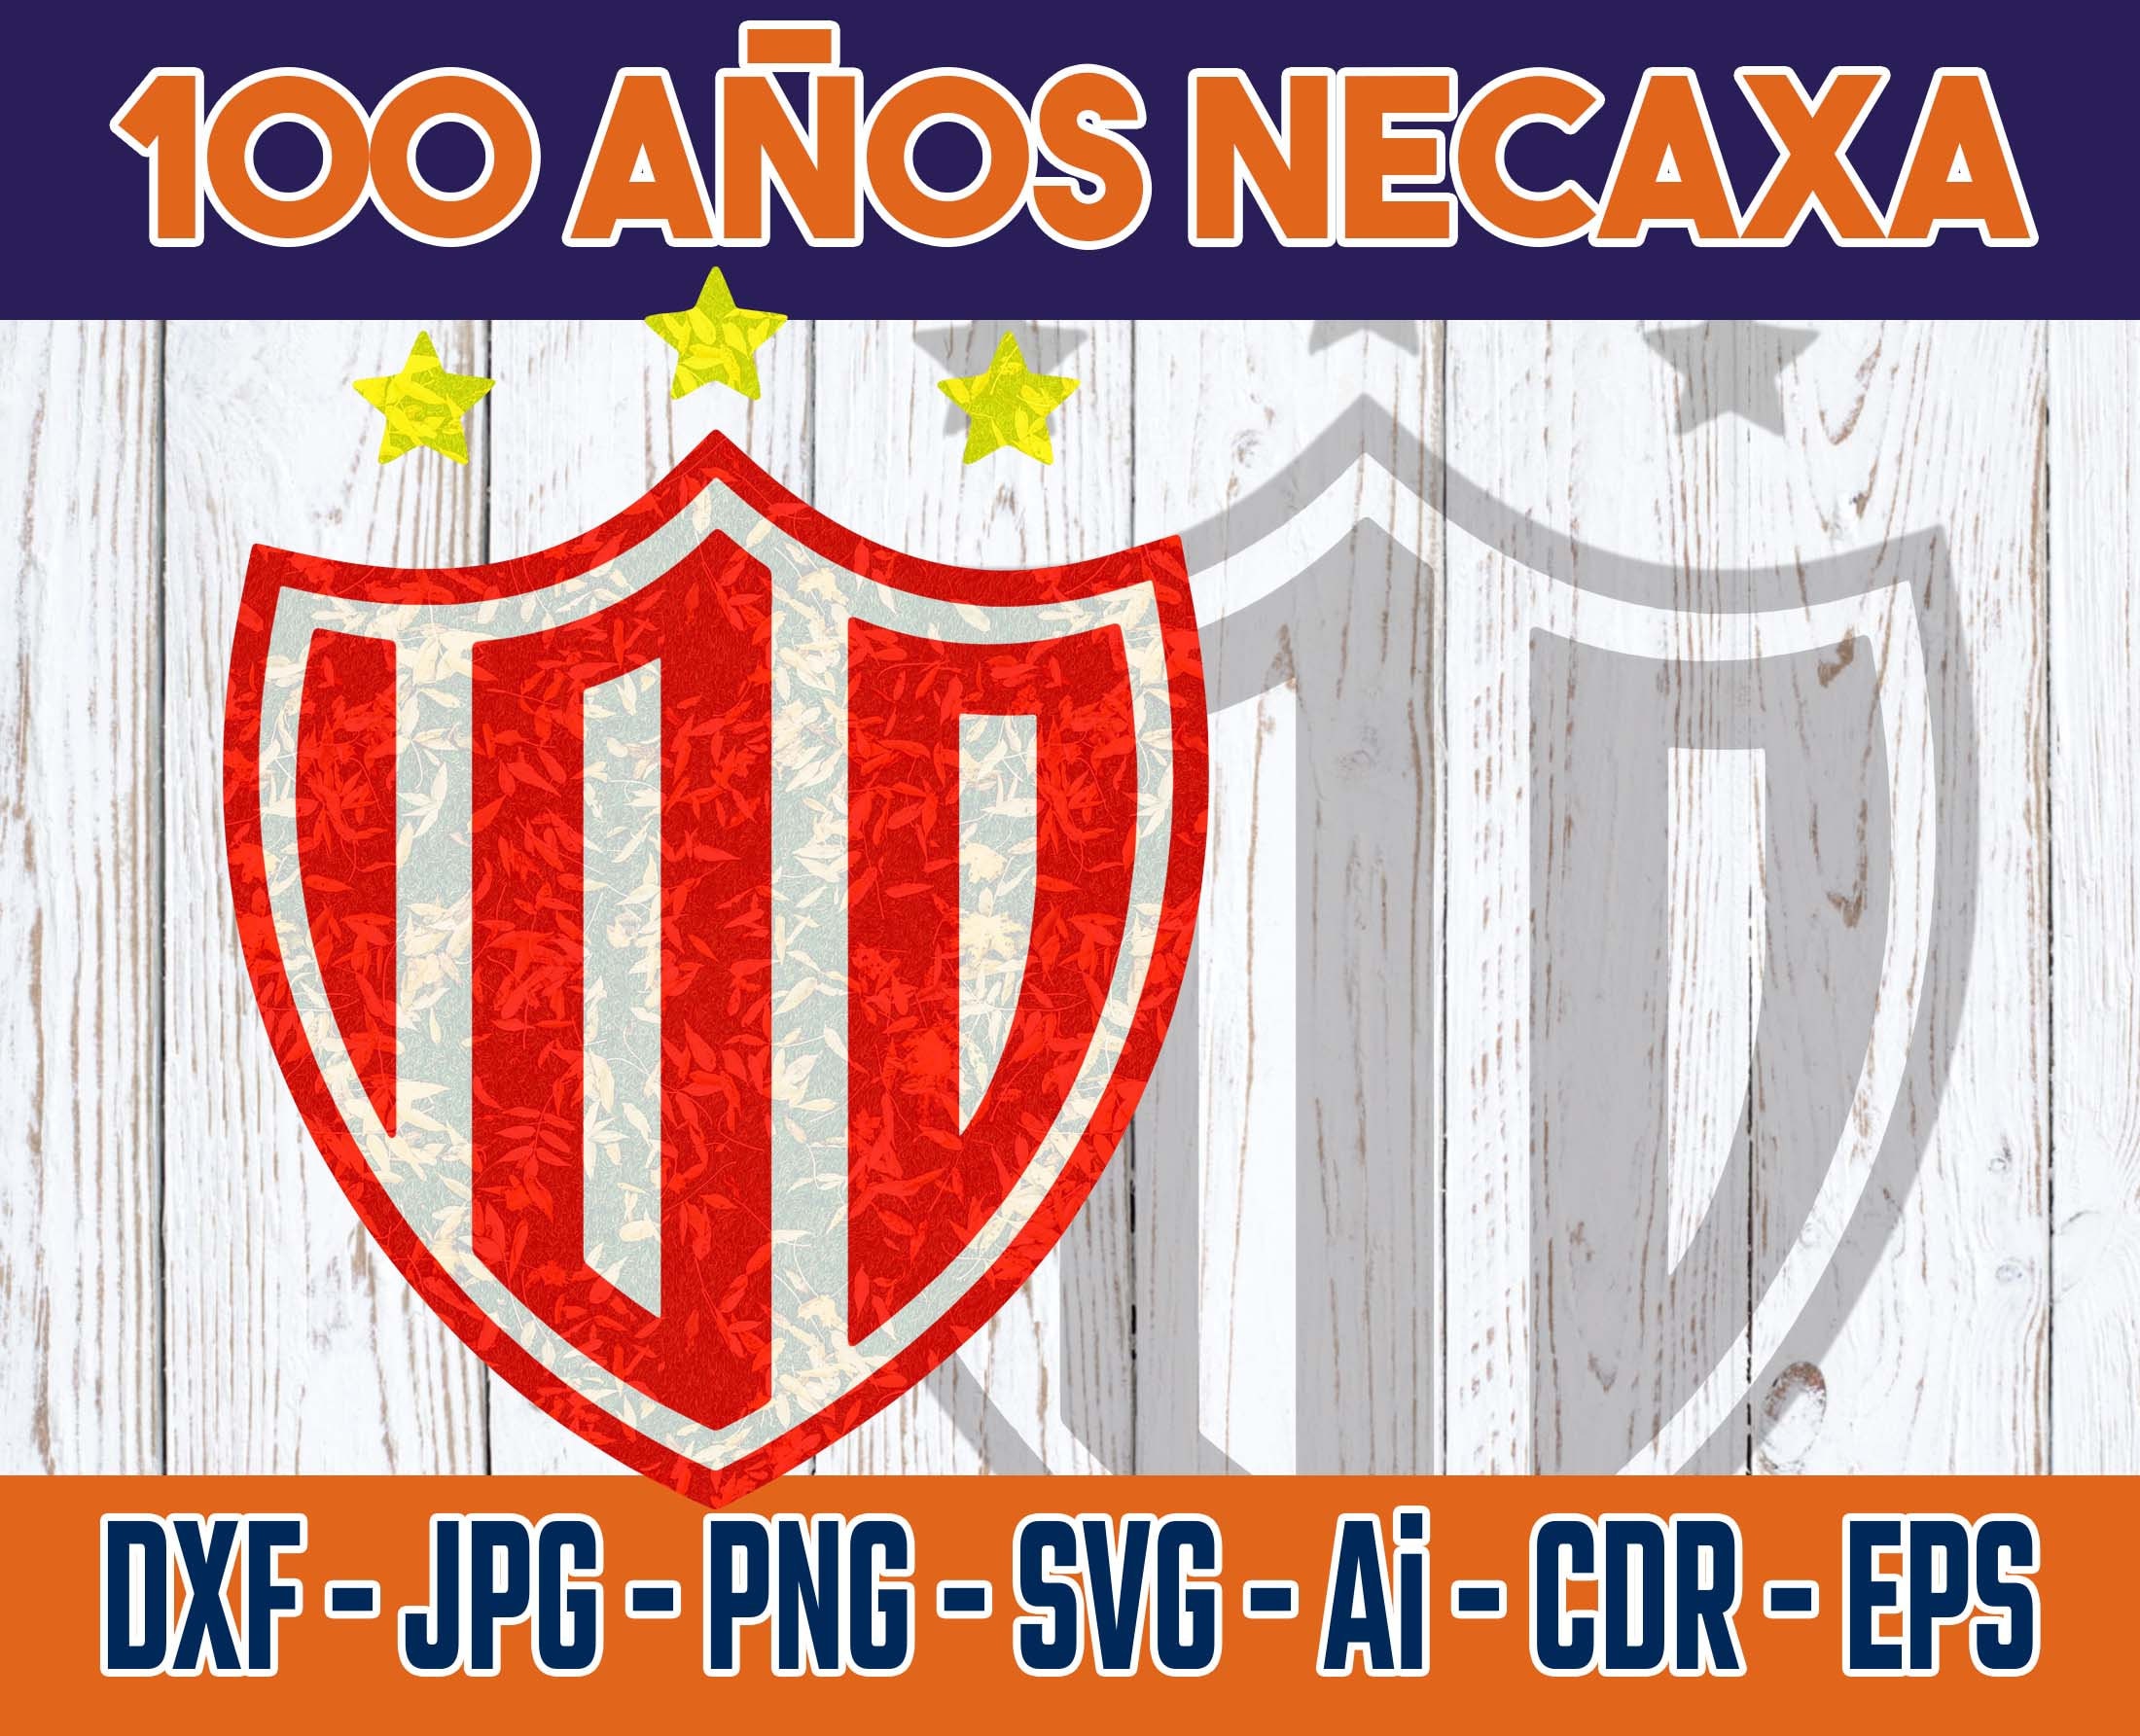 Club Necaxa 100 Años Escudo Necaxa 100 Años Necaxa SVG 100 - Etsy Ireland